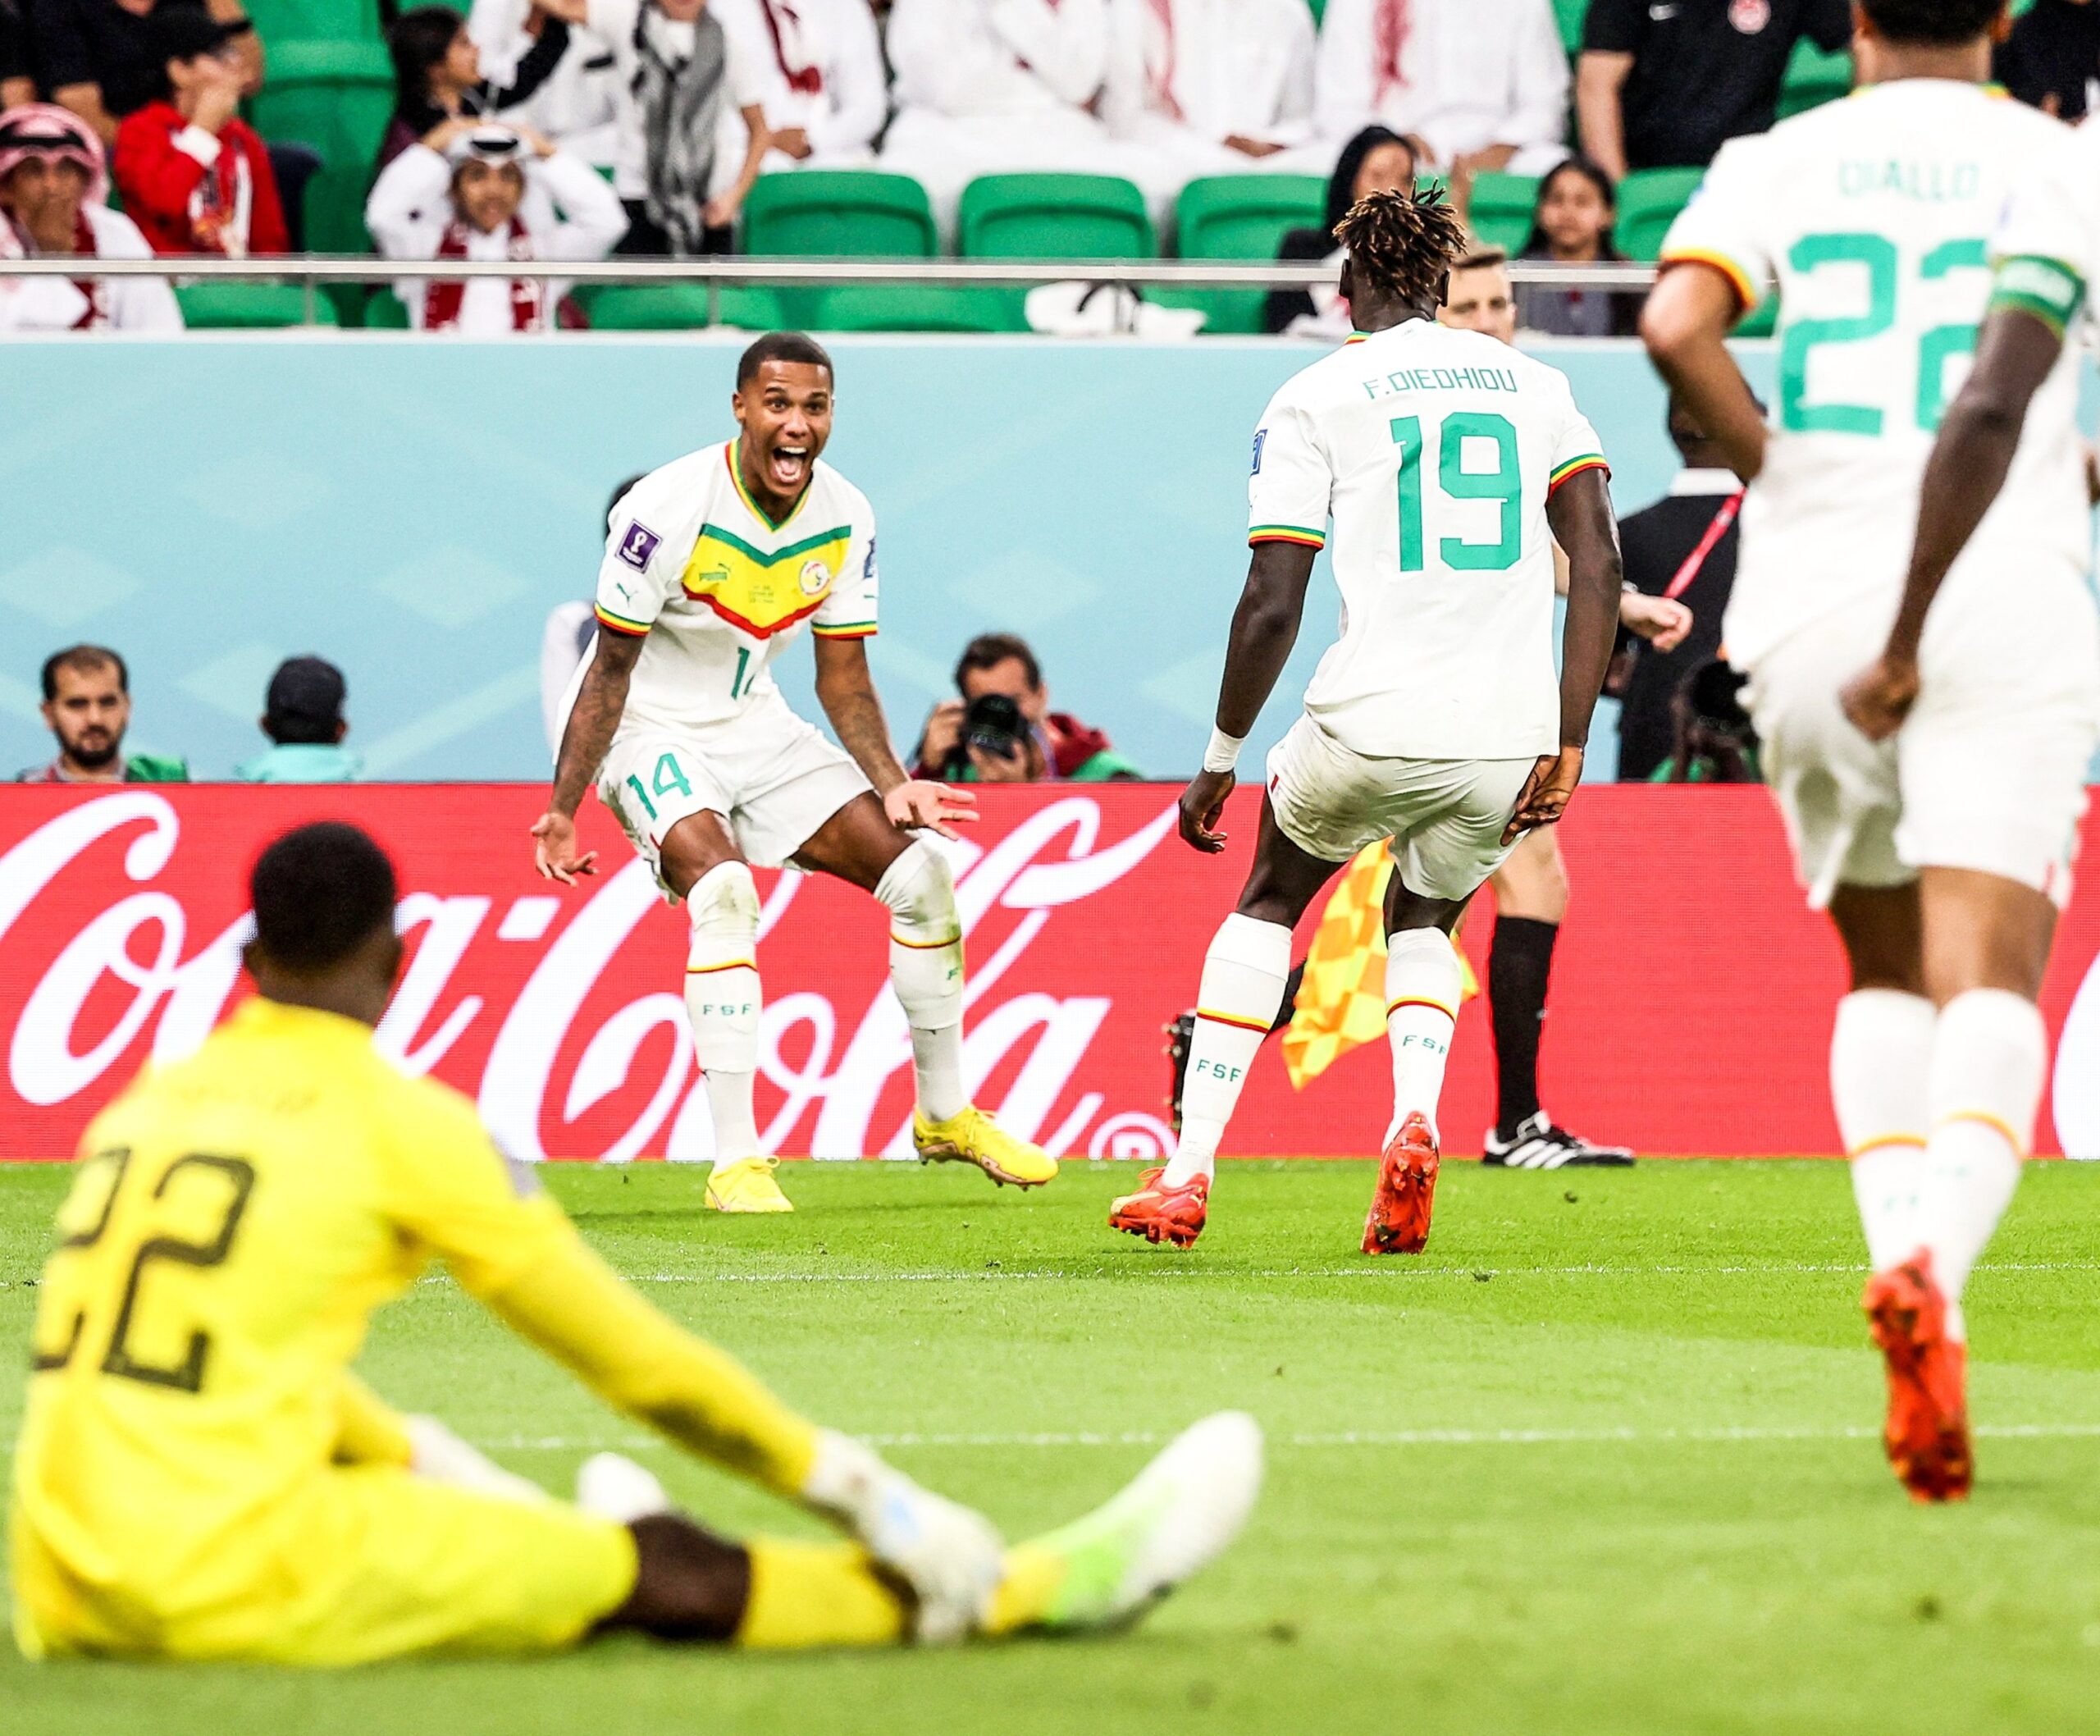 Sénégal, Victoire du Sénégal face au Qatar, la première africaine, Comoros Football 269 | Portail du football des Comores